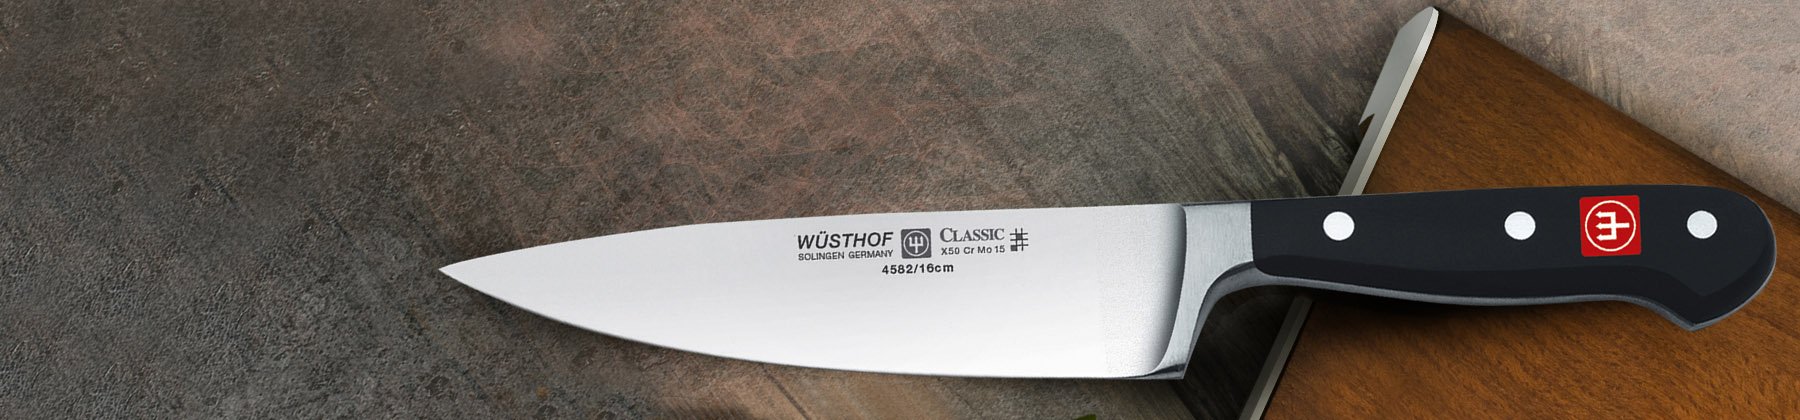 Photo of Wusthof chef knife.